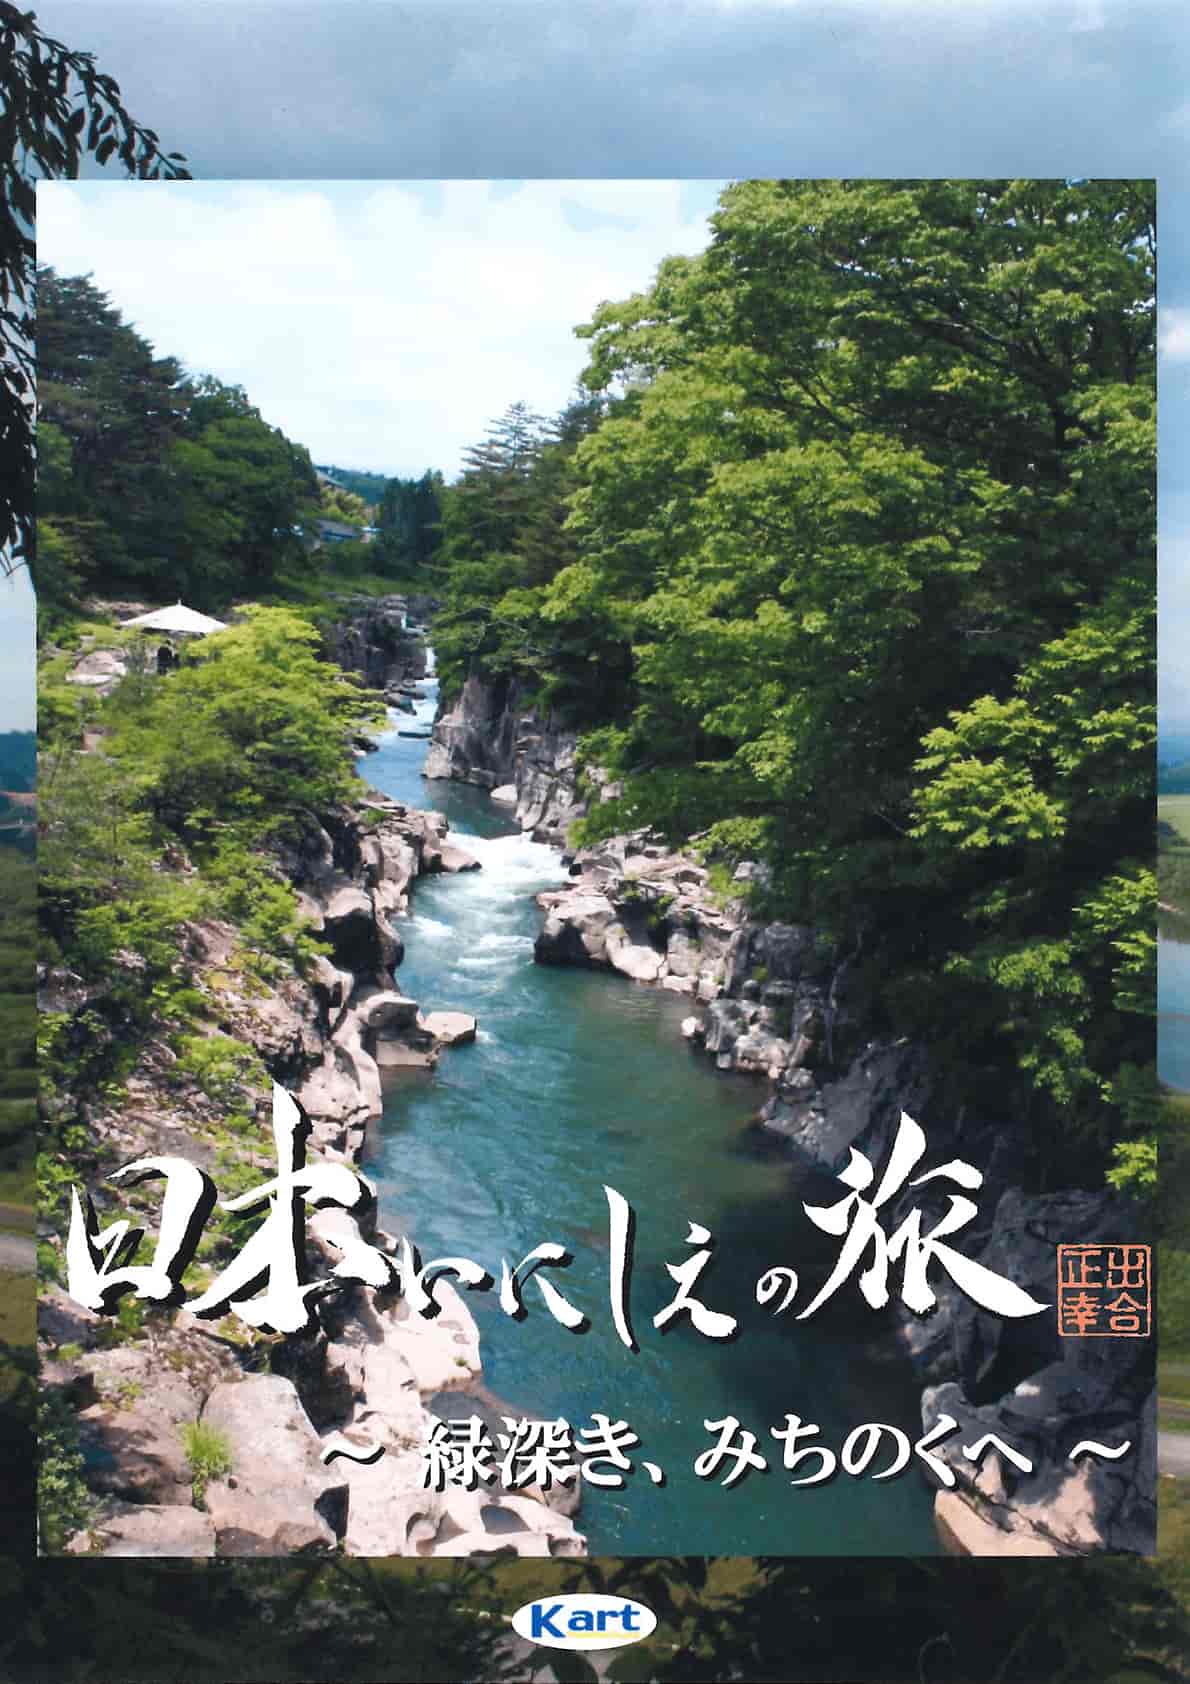 Travel in Japanese antiquity - MICHINOKU